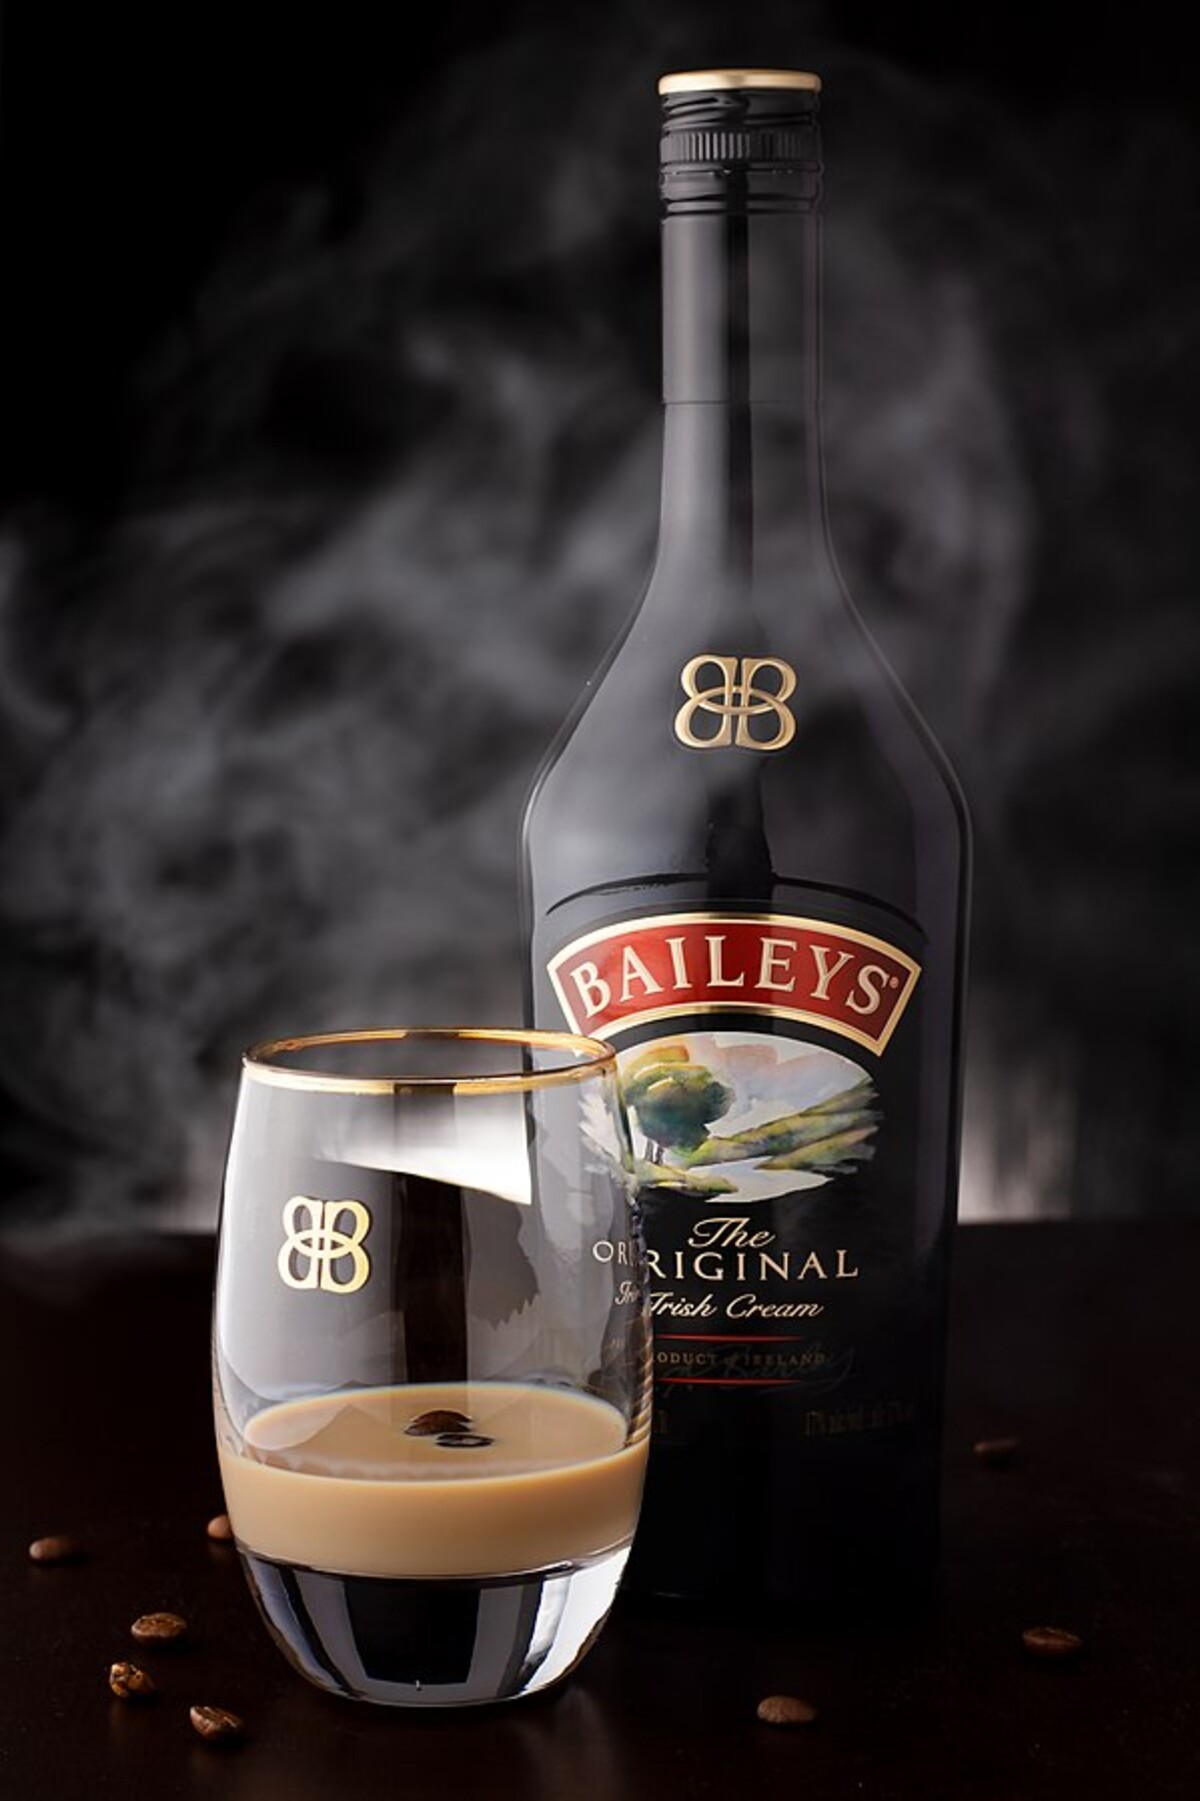 5. místo: Baileys (Irsko) – Vyhlášený krémový likér se vyrábí kombinací neutrálního alkoholu, třikrát destilované irské whisky a smetany, kterou dodávají malé místní irské rodinné farmy. Základ likéru je navíc obohacen o vanilku, kakao a karamel. Nápoj byl vynalezen v Dublinu v 70. letech 20. století a dodnes zůstává výhradně irským výrobkem a jednou z nejvýznamnějších irských značek.